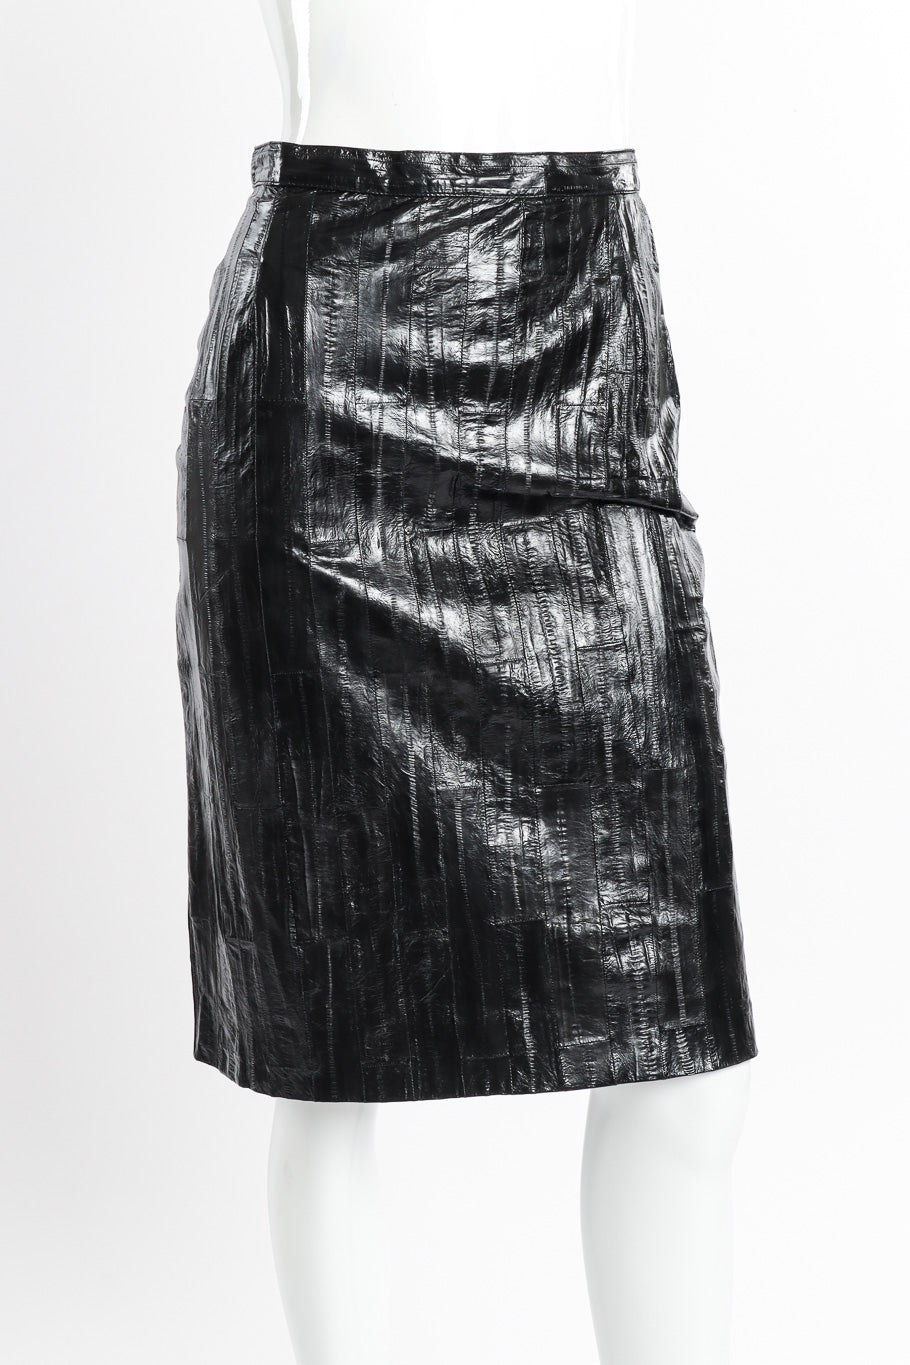 Vintage Krizia Eel Patent Leather Skirt front view on mannequin closeup @recessla